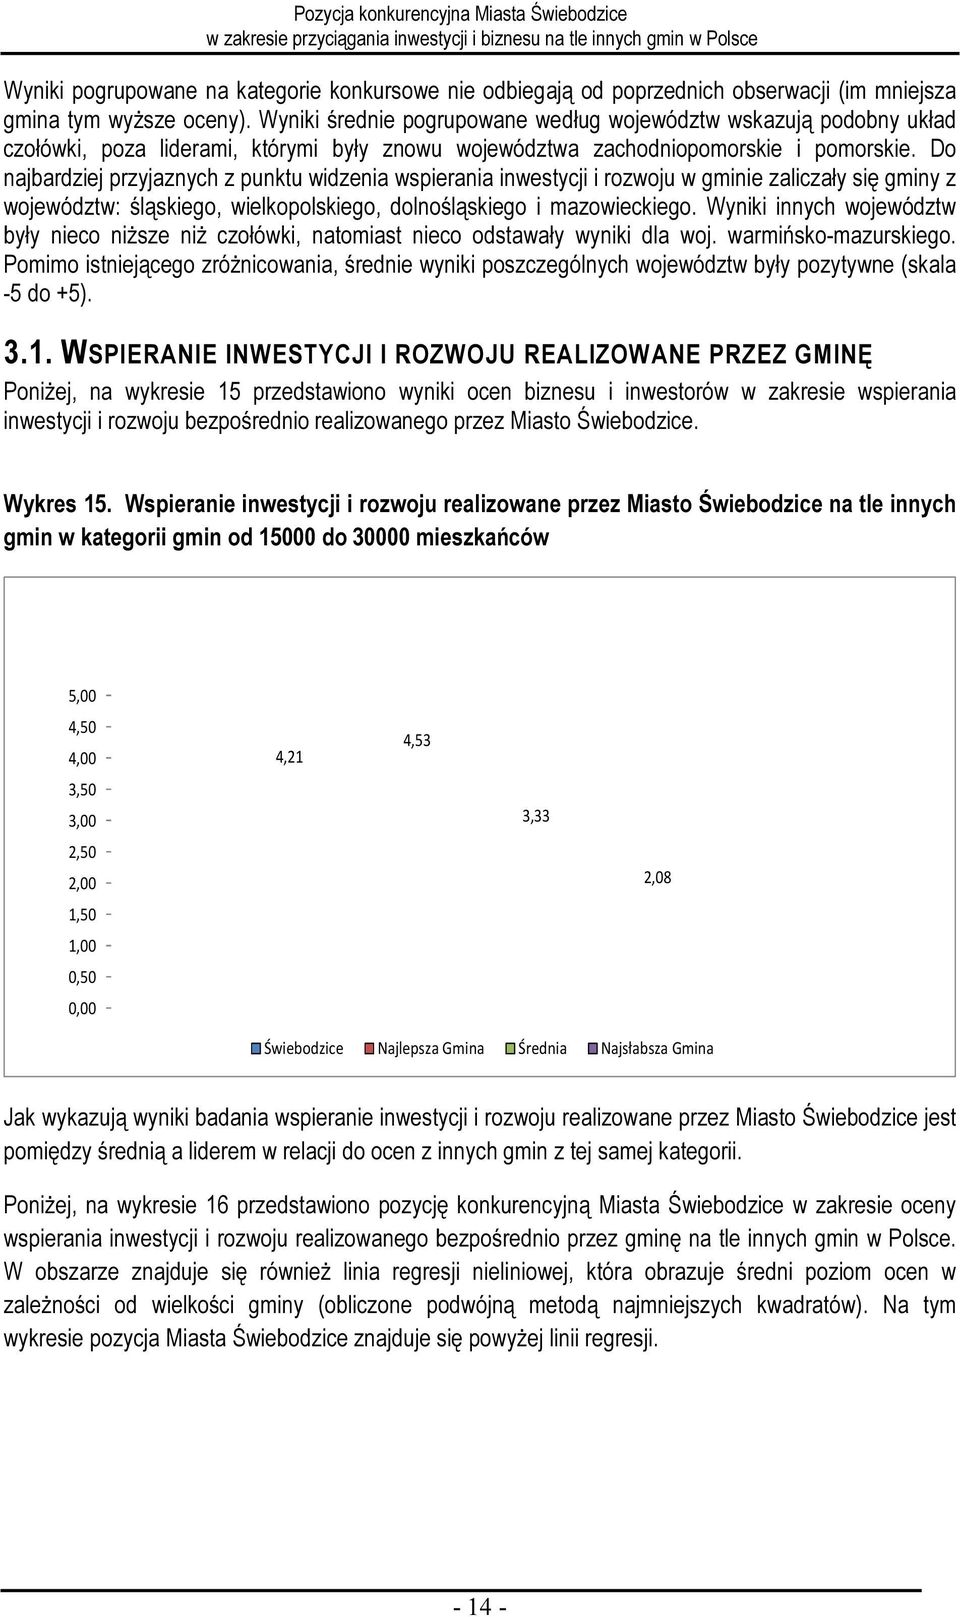 Do najbardziej przyjaznych z punktu widzenia wspierania inwestycji i rozwoju w gminie zaliczały się gminy z województw: śląskiego, wielkopolskiego, dolnośląskiego i mazowieckiego.